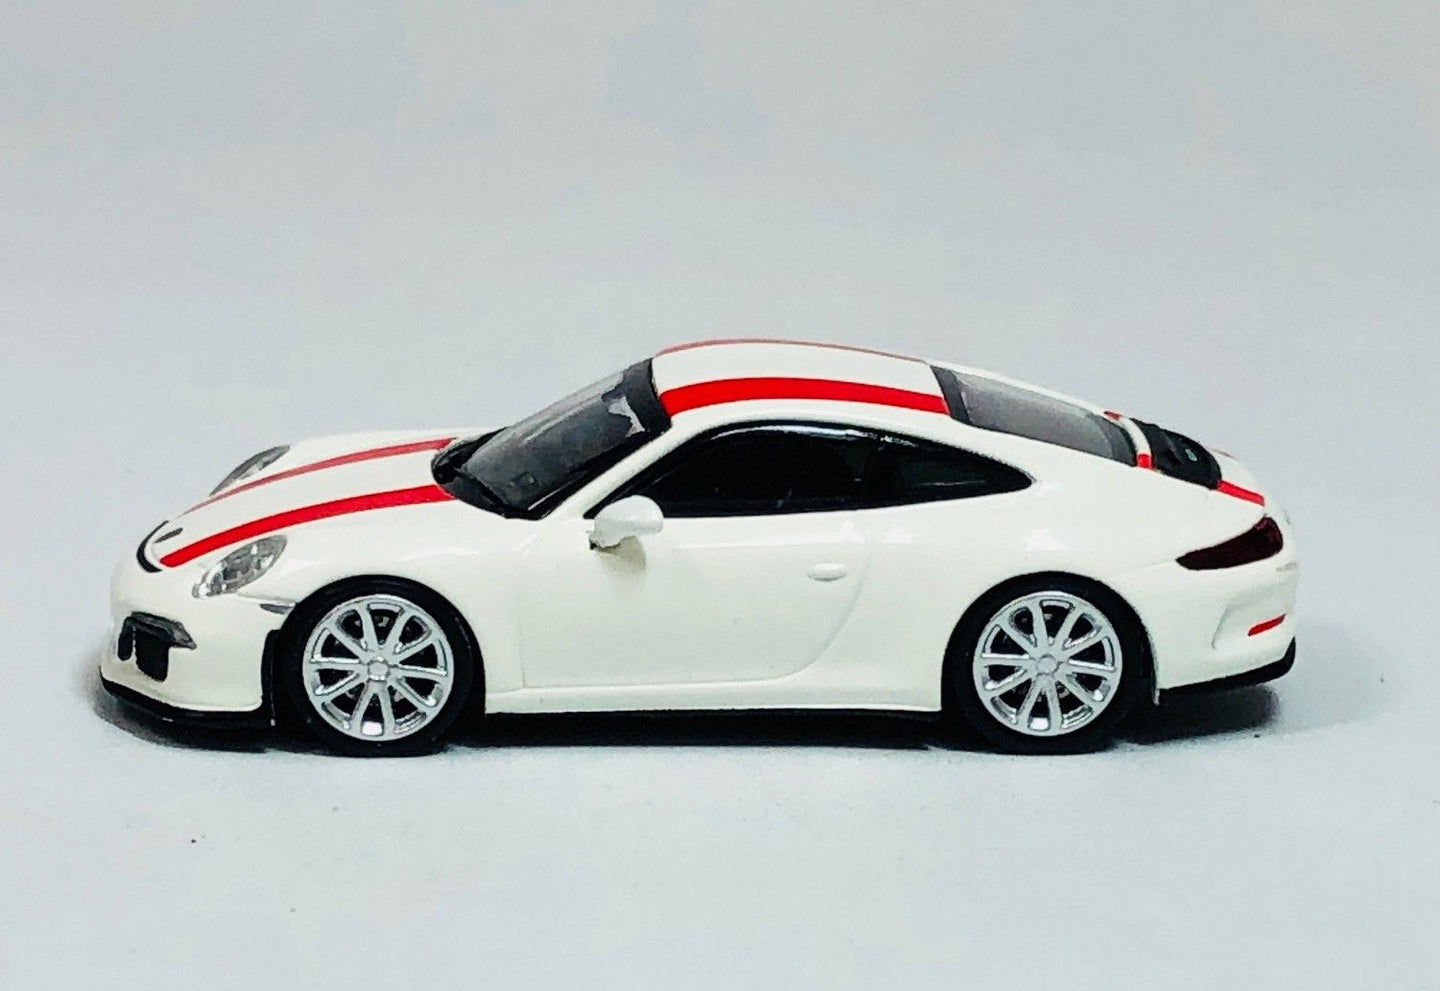 Minichamps 1/87 HO Porsche 911 R White/Red Stripe 870066220 SALE!